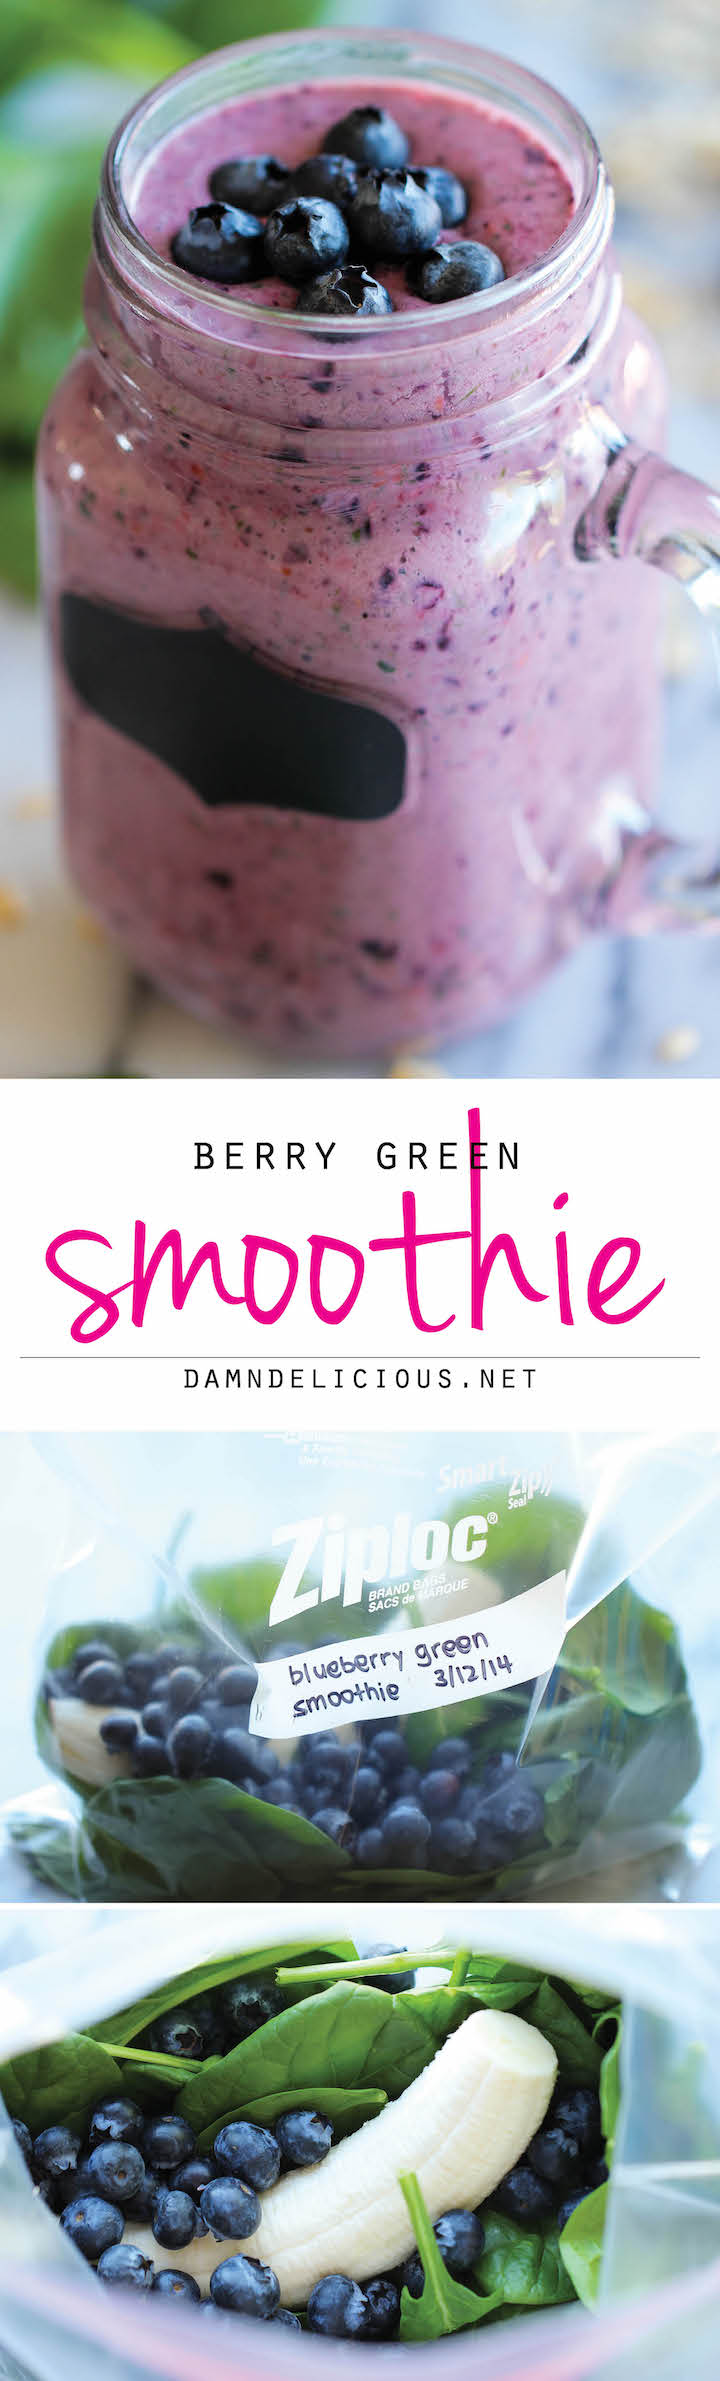 Berry Green Smoothie Damn Delicious